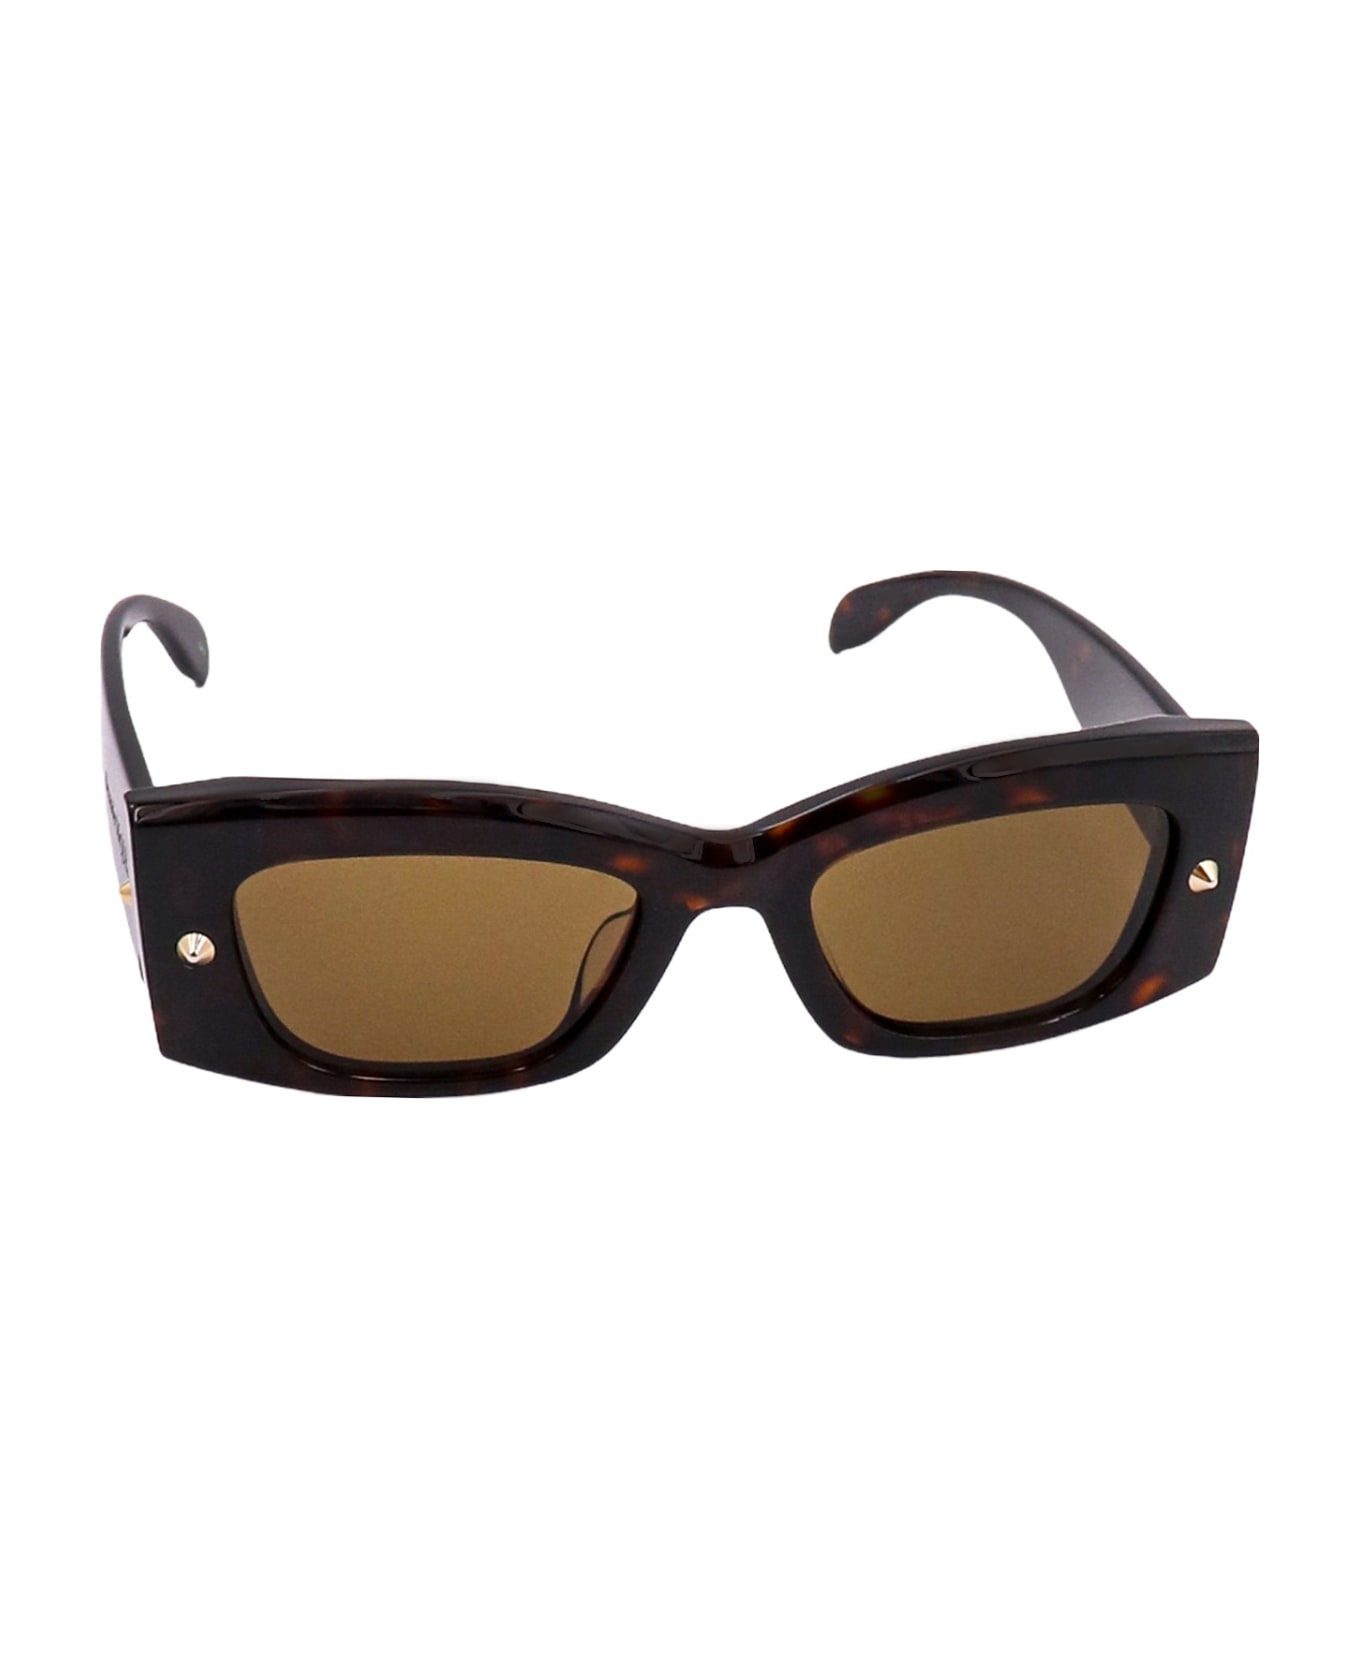 Alexander McQueen Eyewear Sunglasses - Brown サングラス